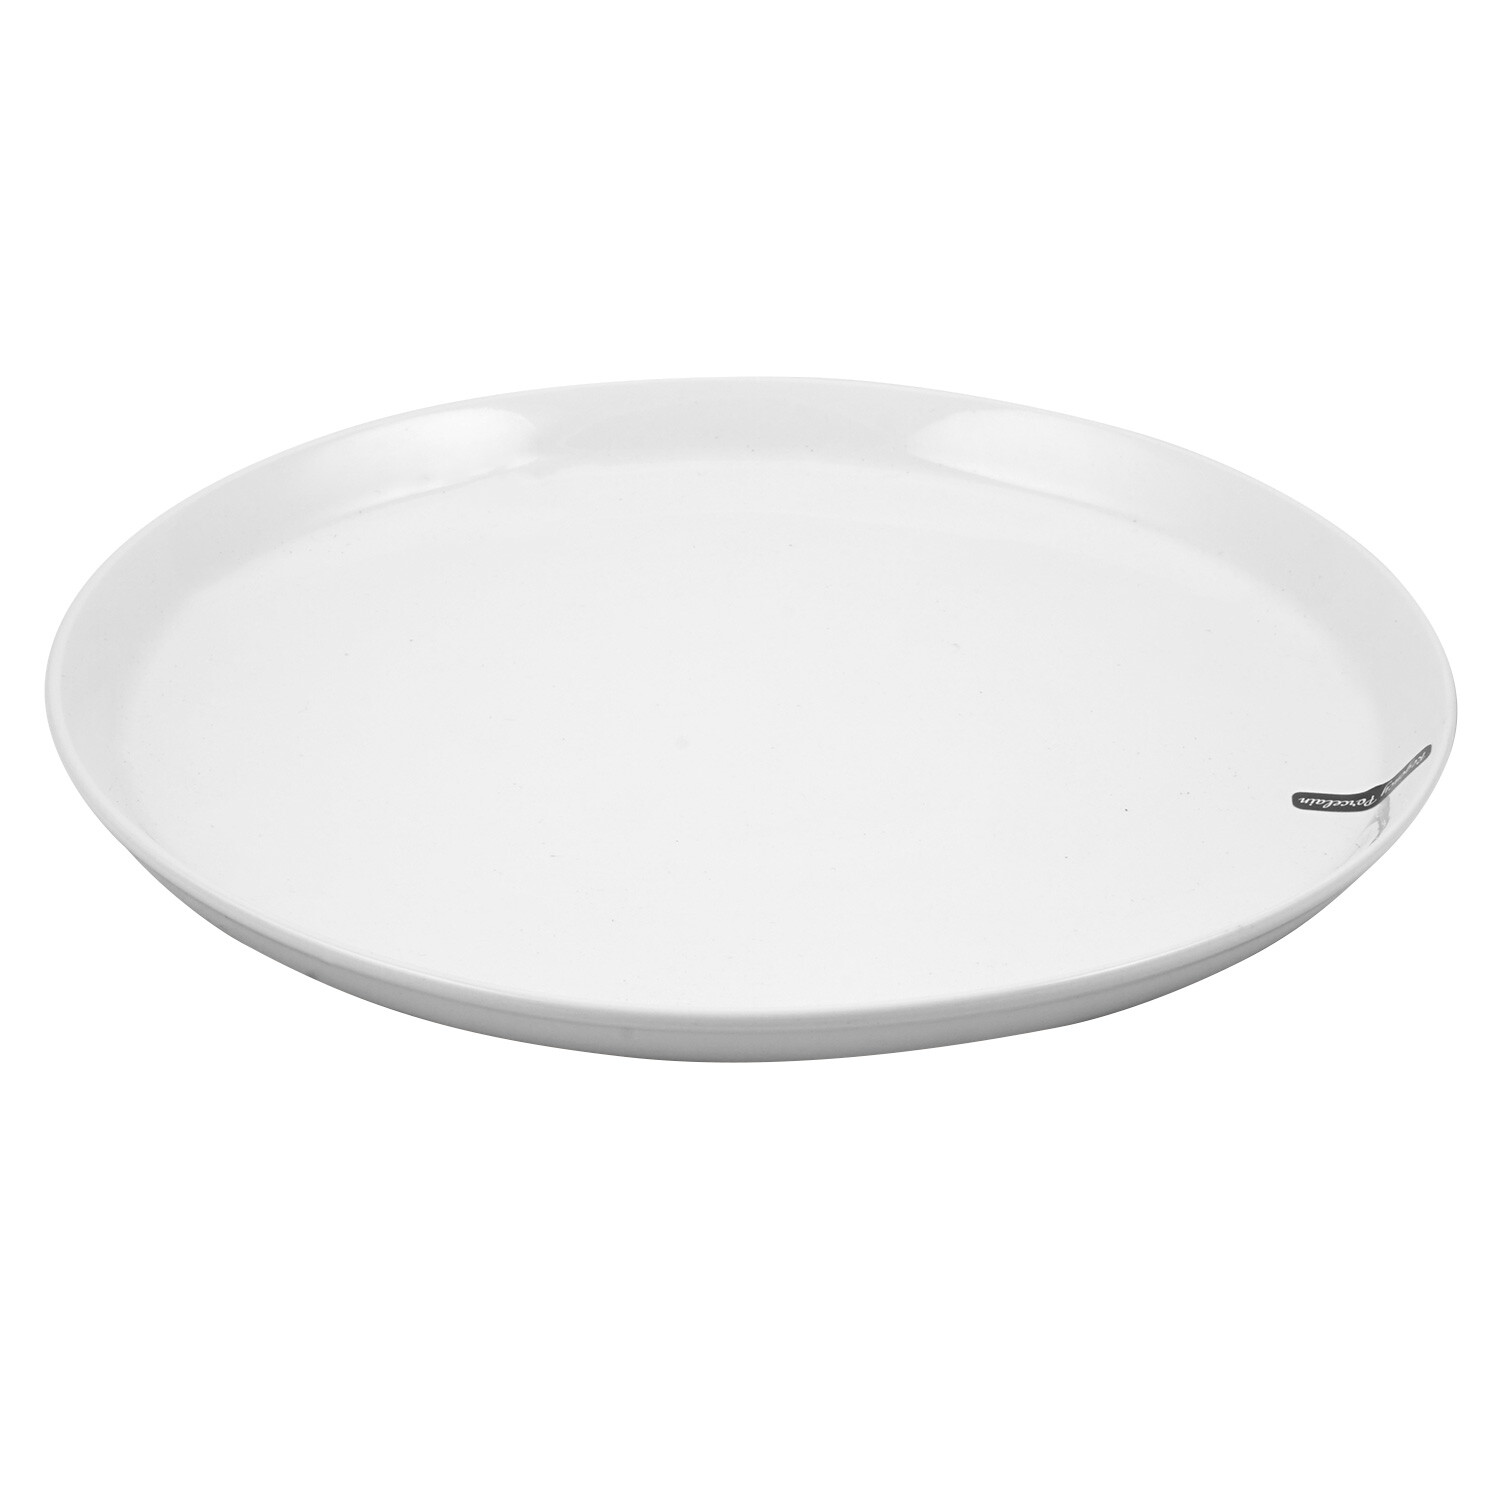 Regency White Porcelain Pizza Plate Image